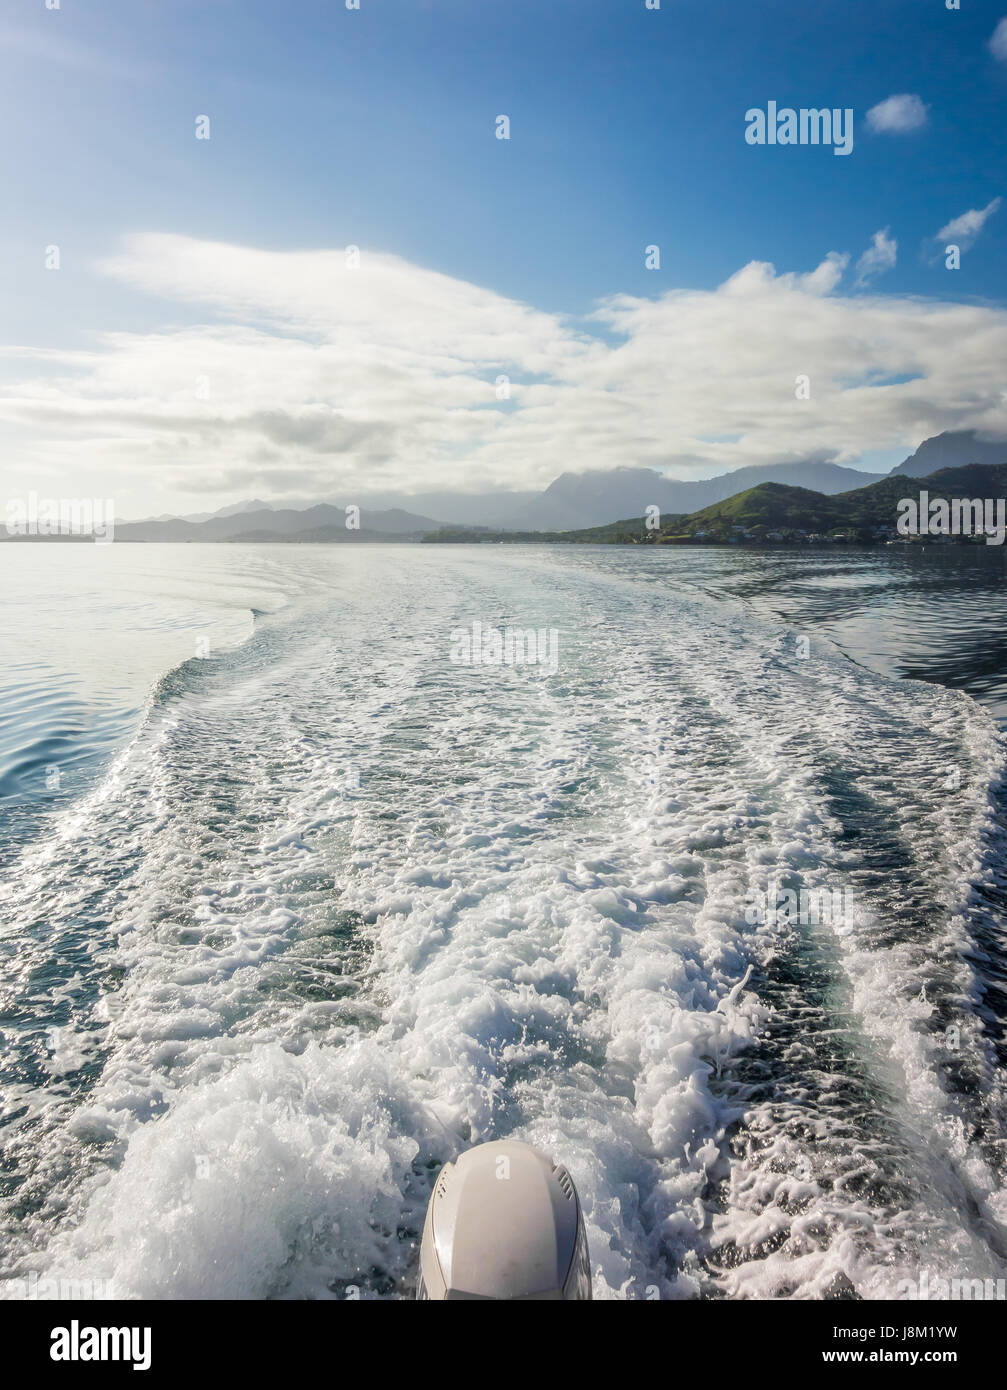 Die Wellen und Spritzwasser von der Rückseite eines Bootes Beschleunigung über das blaue Wasser der Kaneohe Bay auf Oahu, Hawaii gesehen. Stockfoto